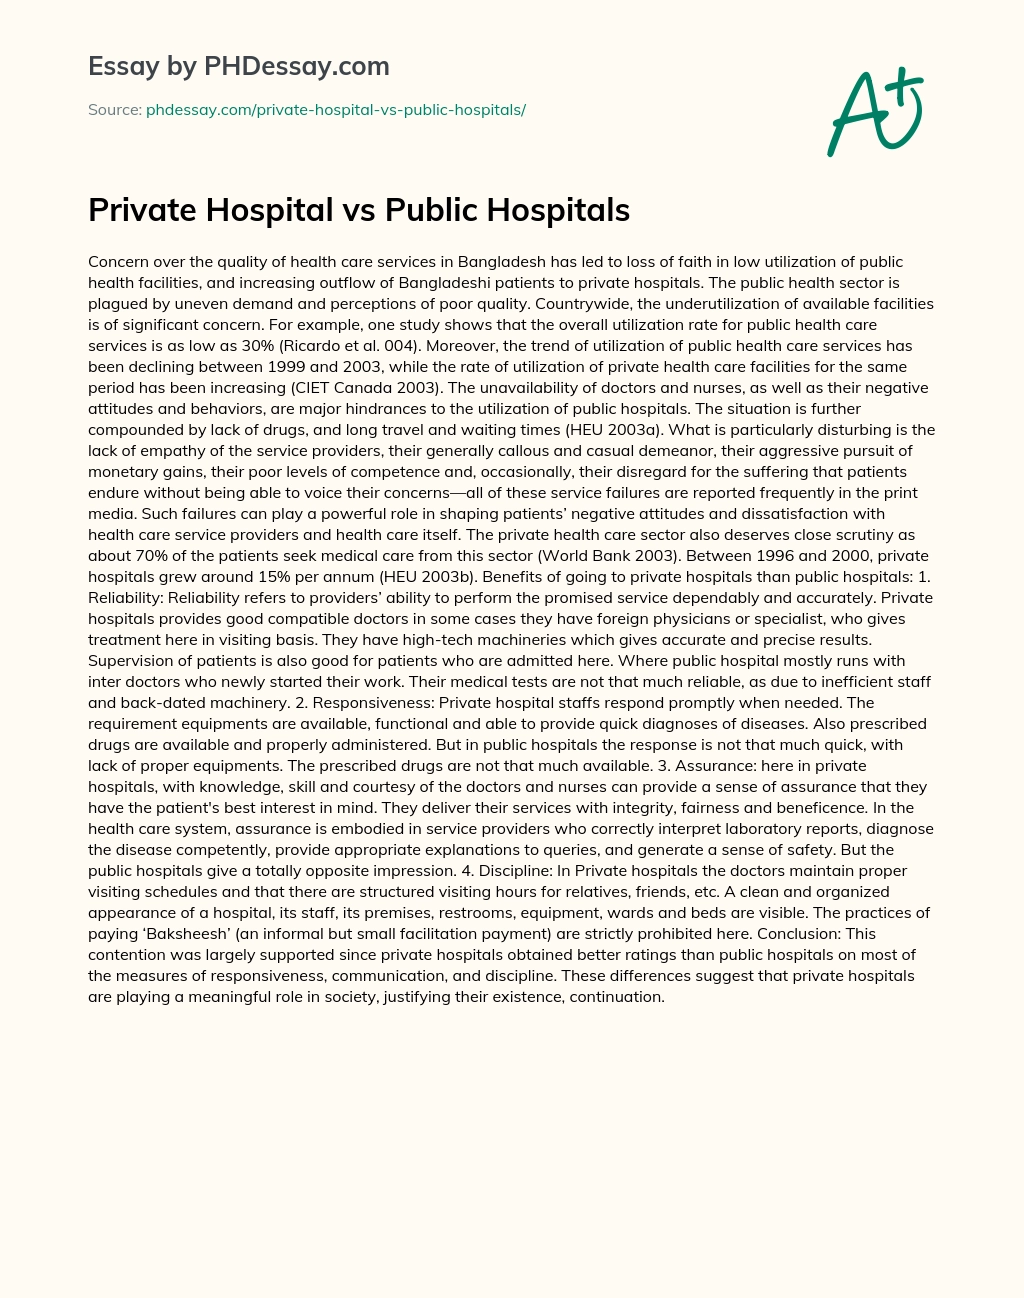 Private Hospital vs Public Hospitals essay